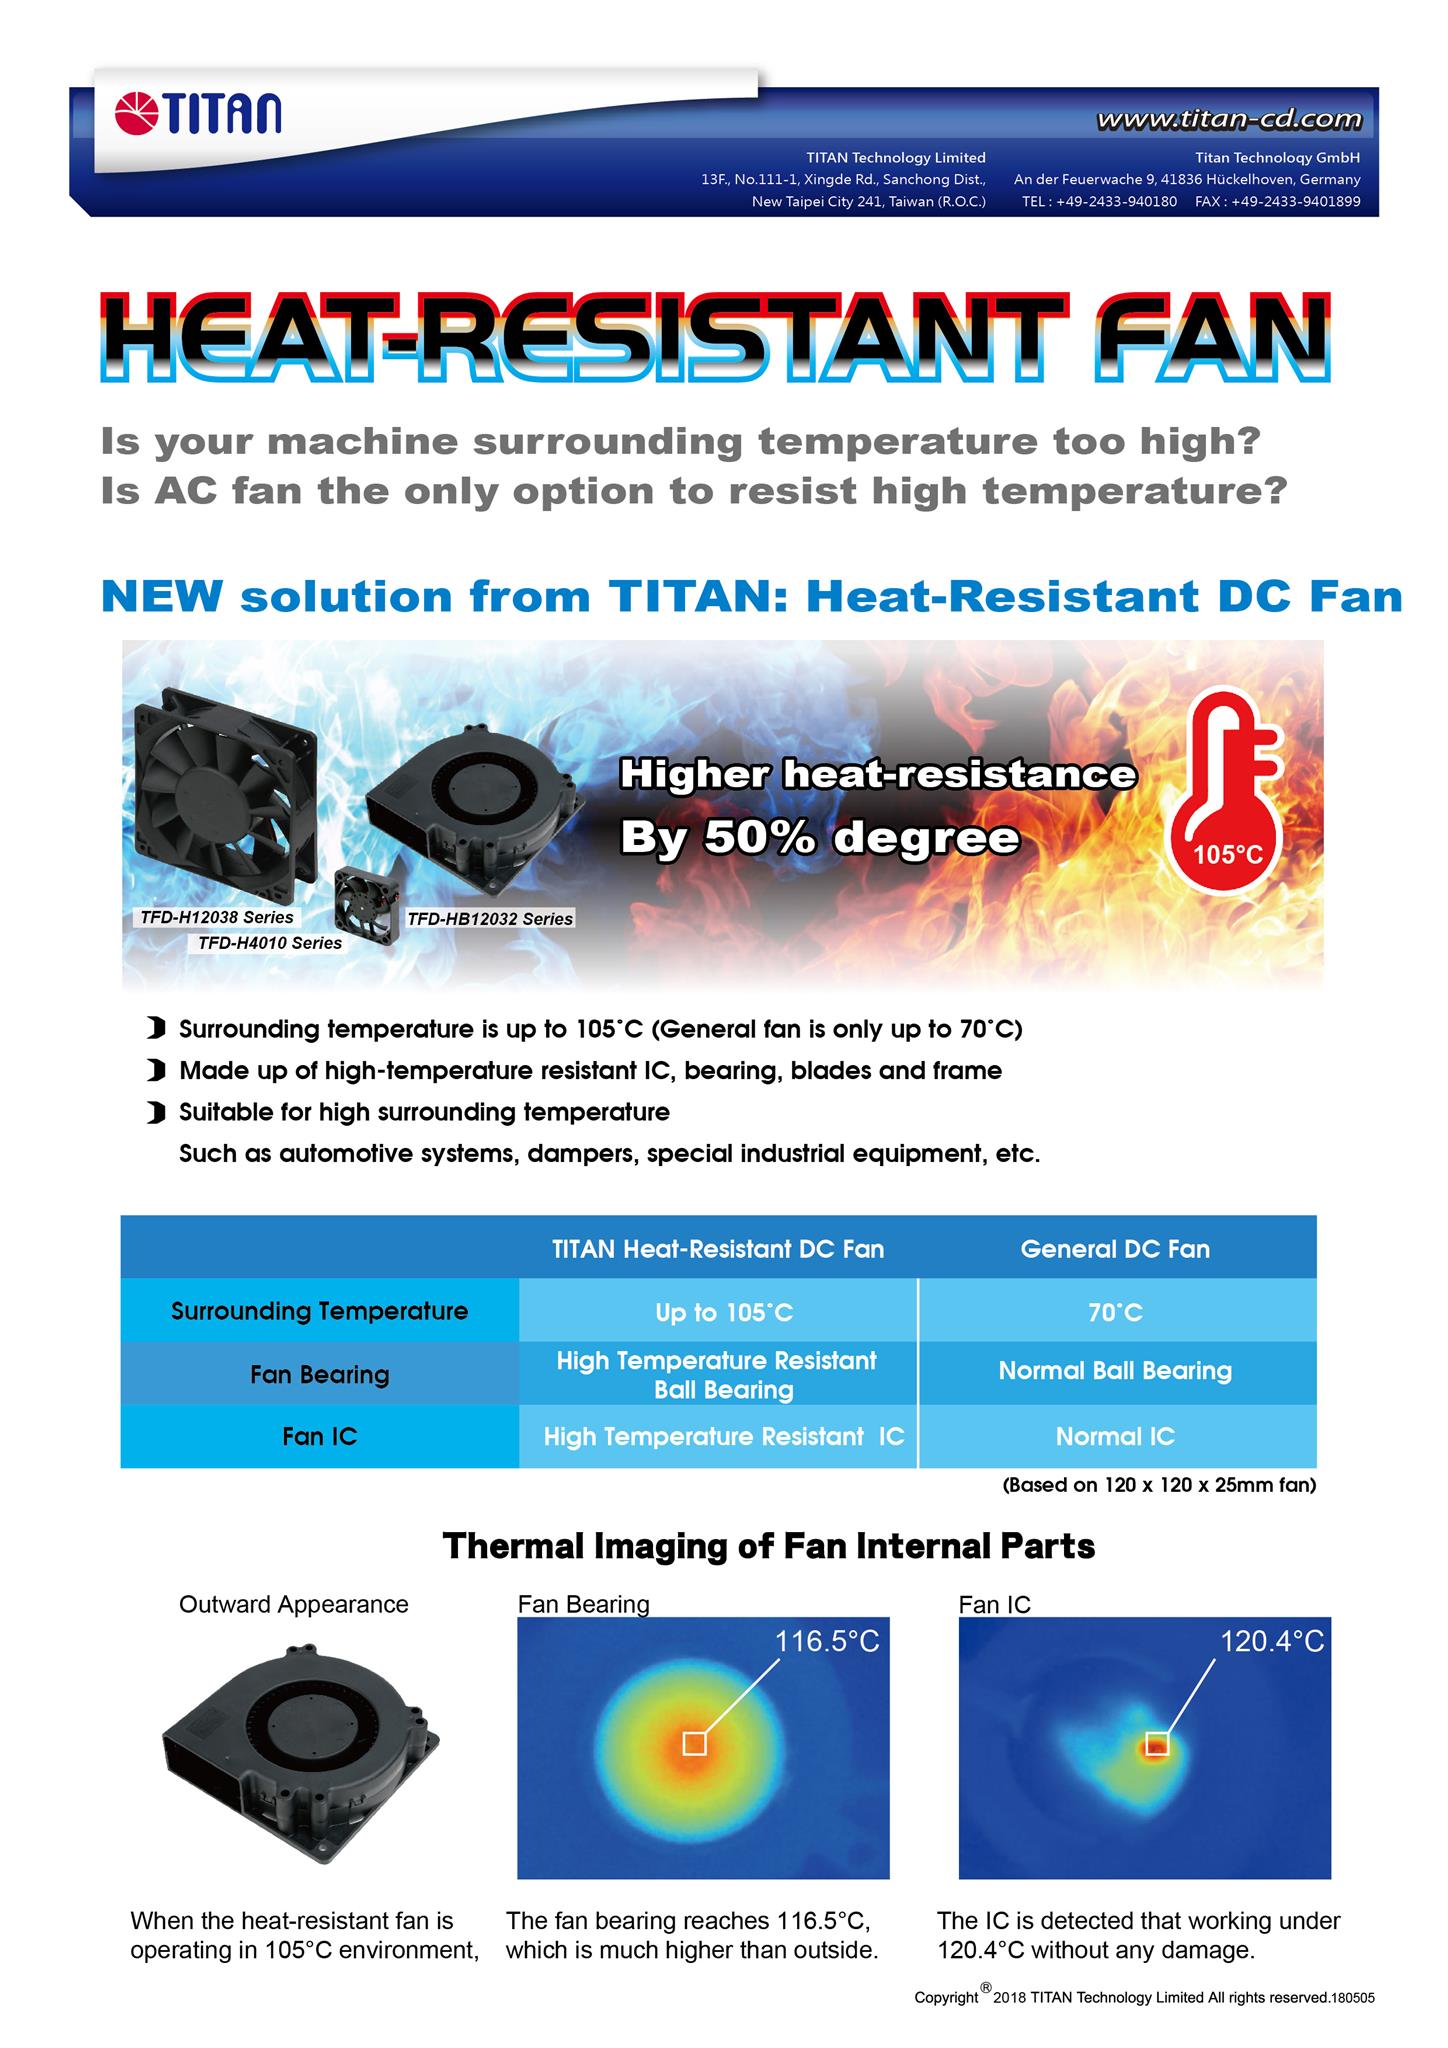 TITAN flacher CPU-Kühler ist nur 23-30mm hoch. Geeignet für flache Gehäuse oder andere HTPC-Gehäuse.